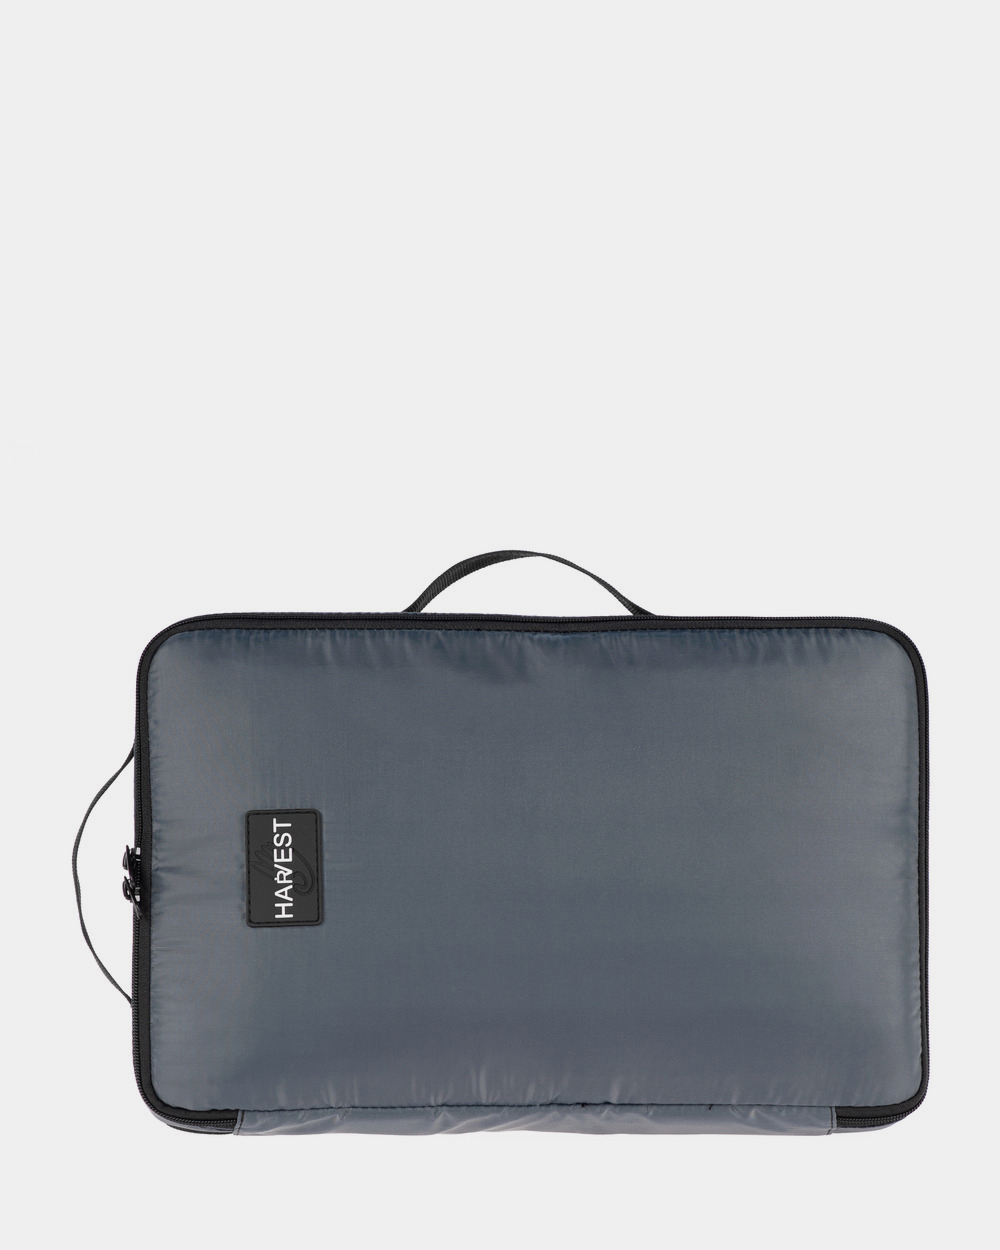 Сумка-рюкзак "Travel Kit", поліестер, сіра